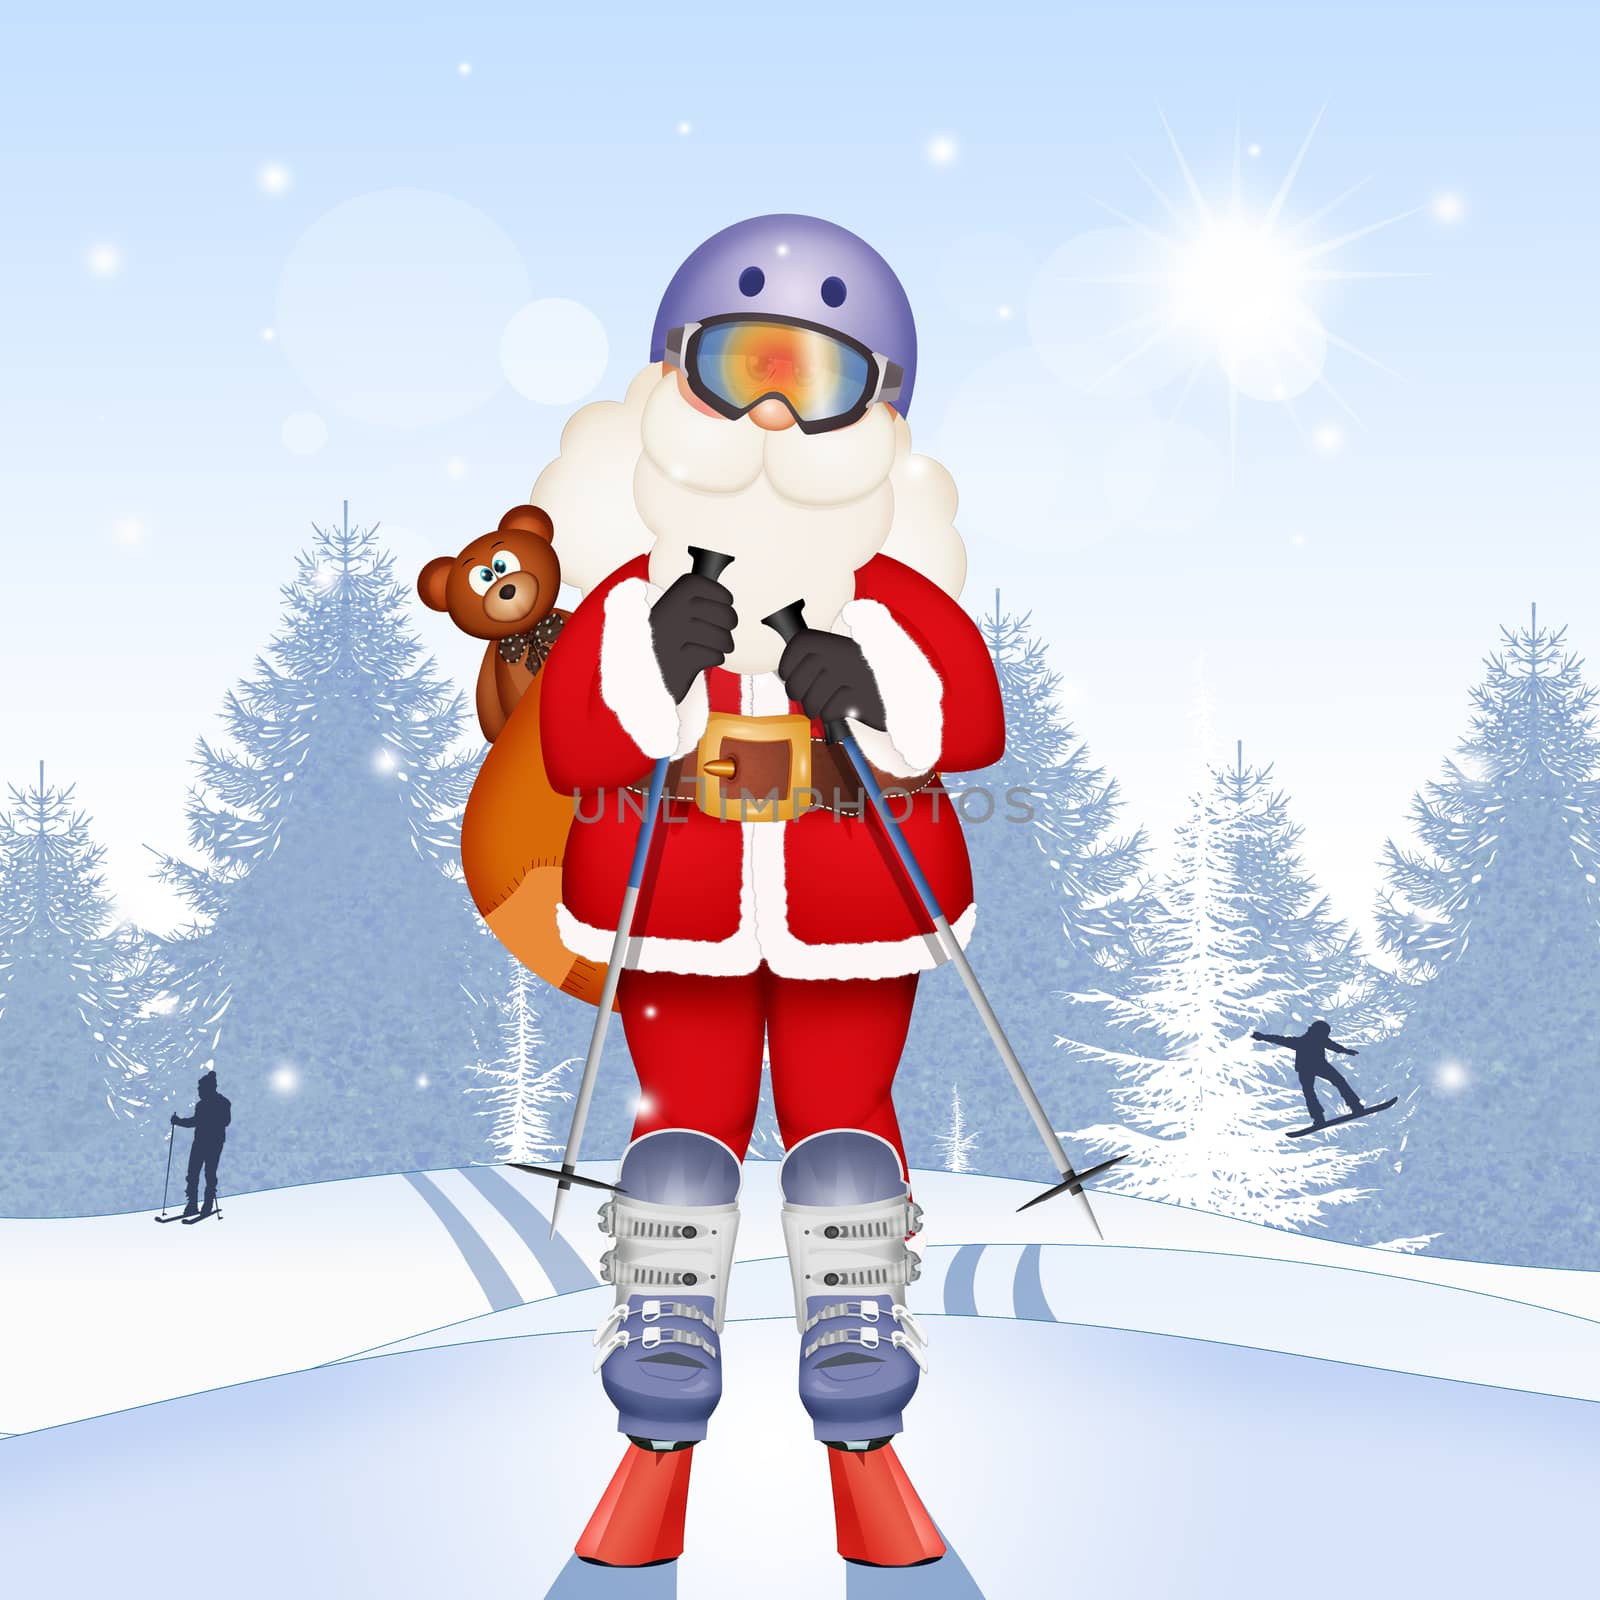 Santa Claus with skis by adrenalina